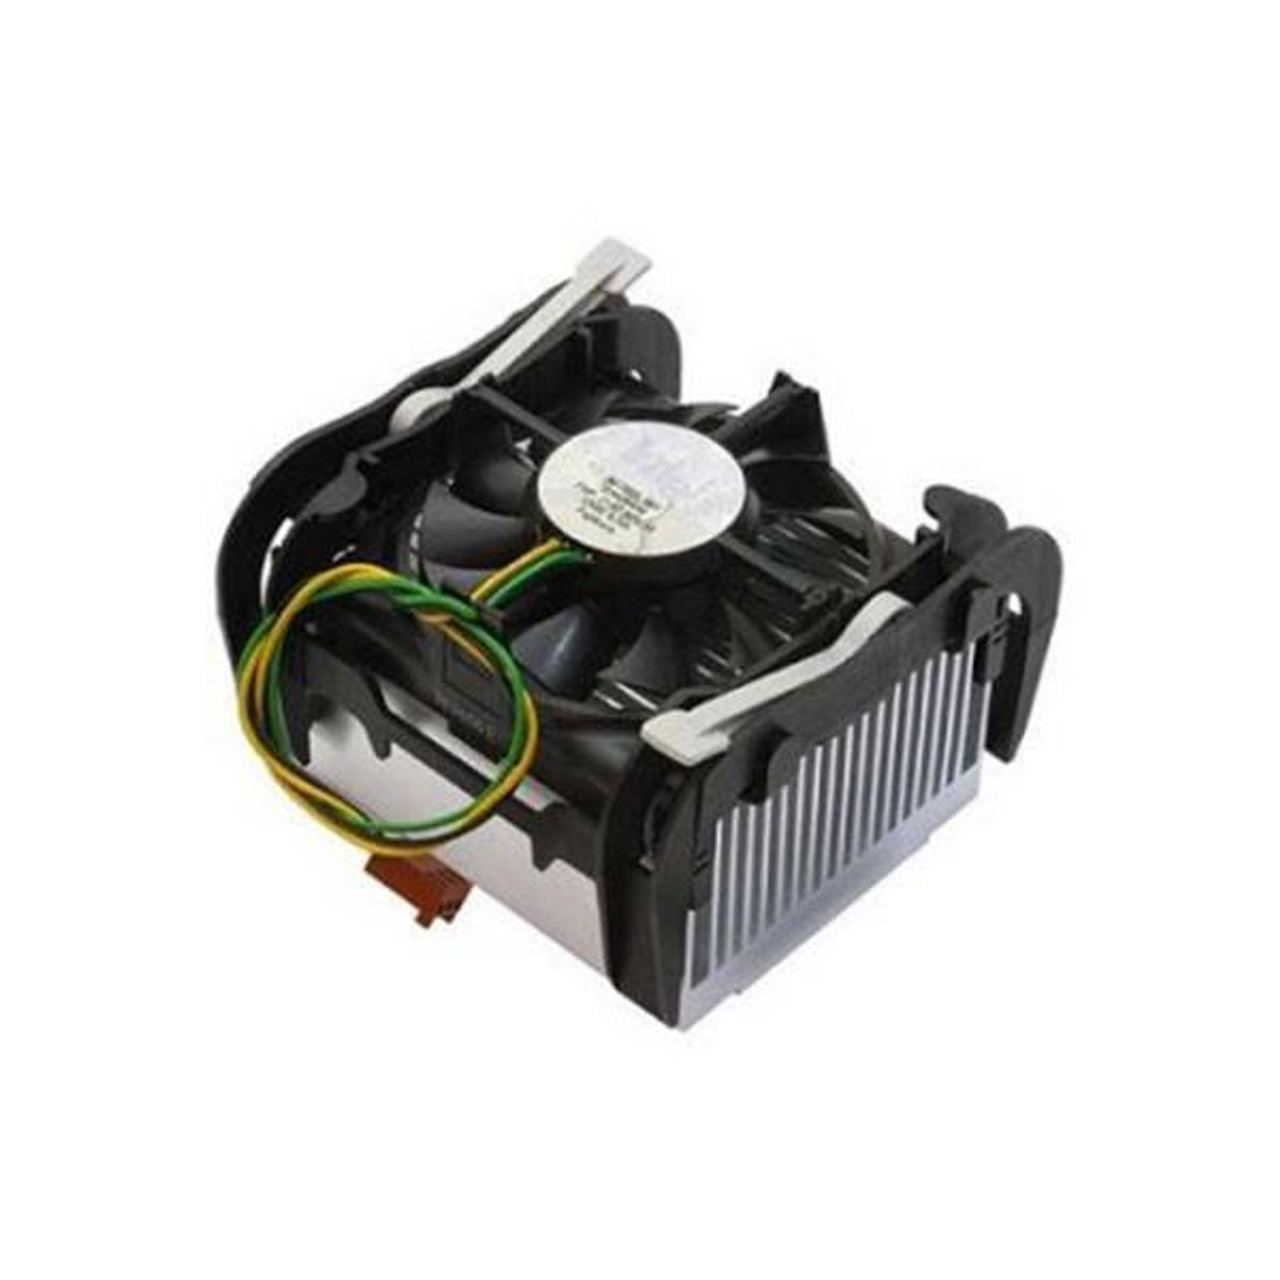 A80856-003 Intel Heatsink & Fan for Socket PGA478